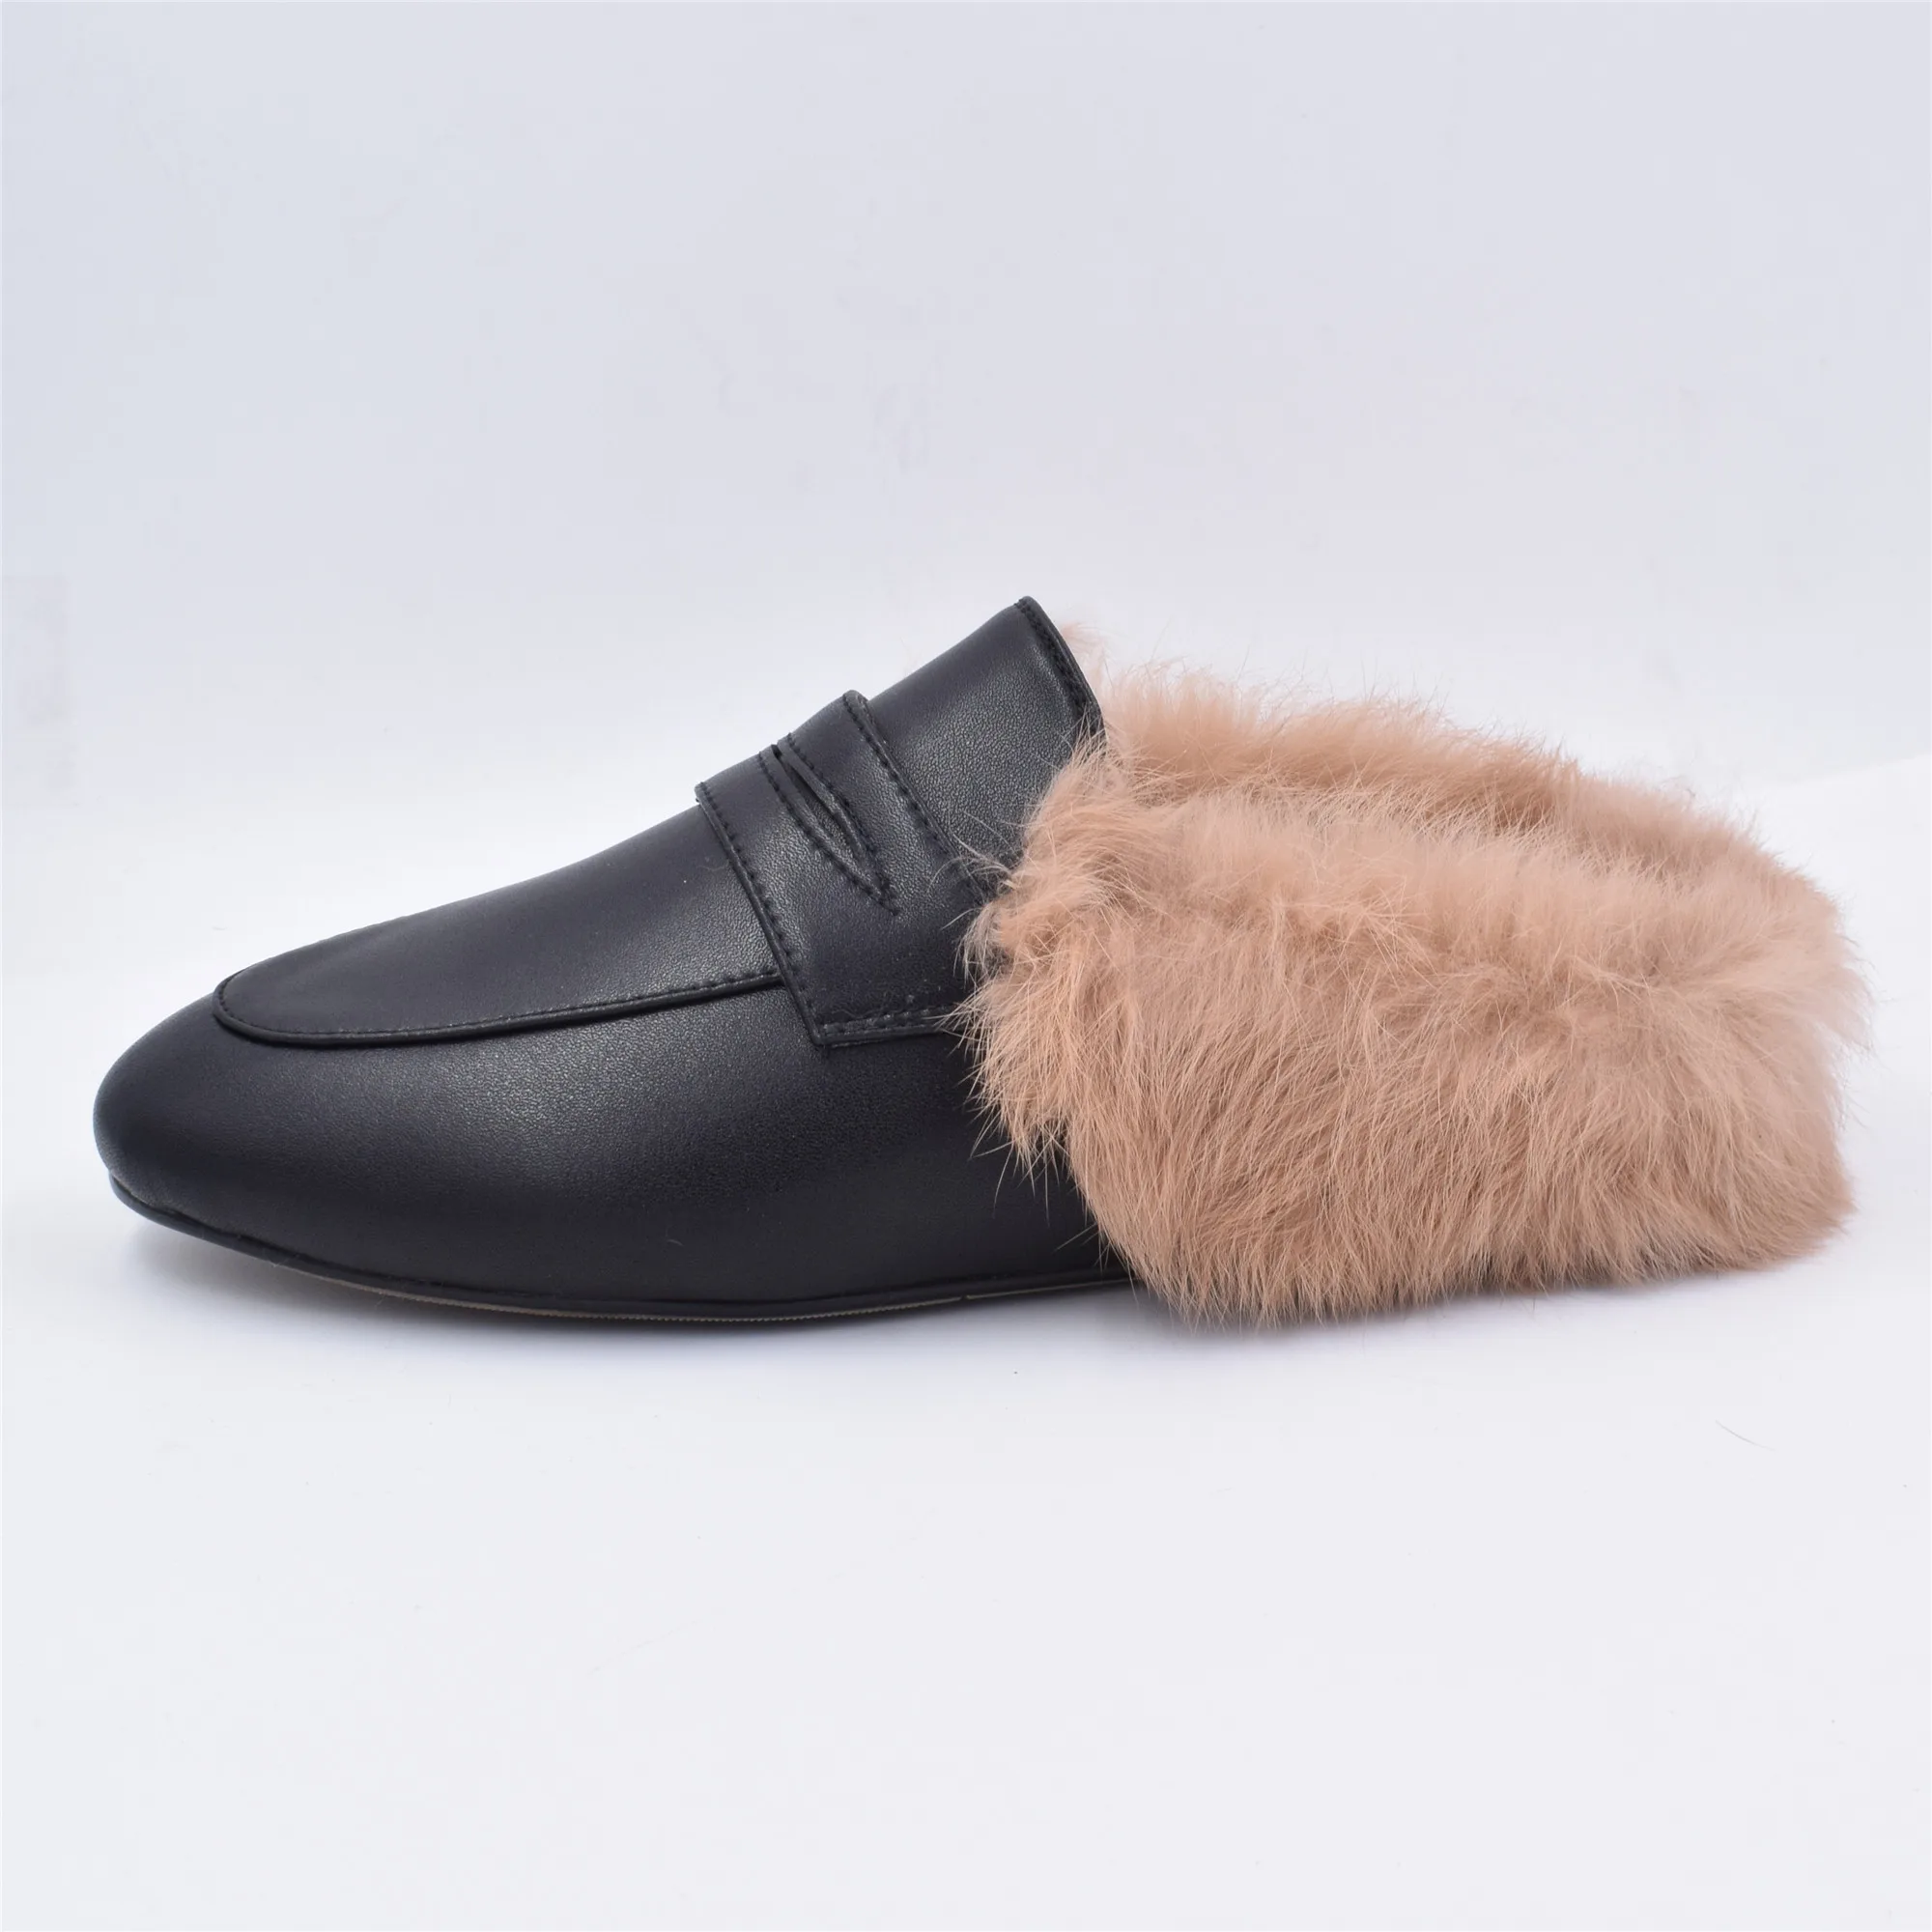 LOVIRS/женские тапочки без задника; лоферы на плоской подошве; теплые замшевые туфли из натуральной кожи; модные тапочки для женщин; большие размеры - Color: Black Leather